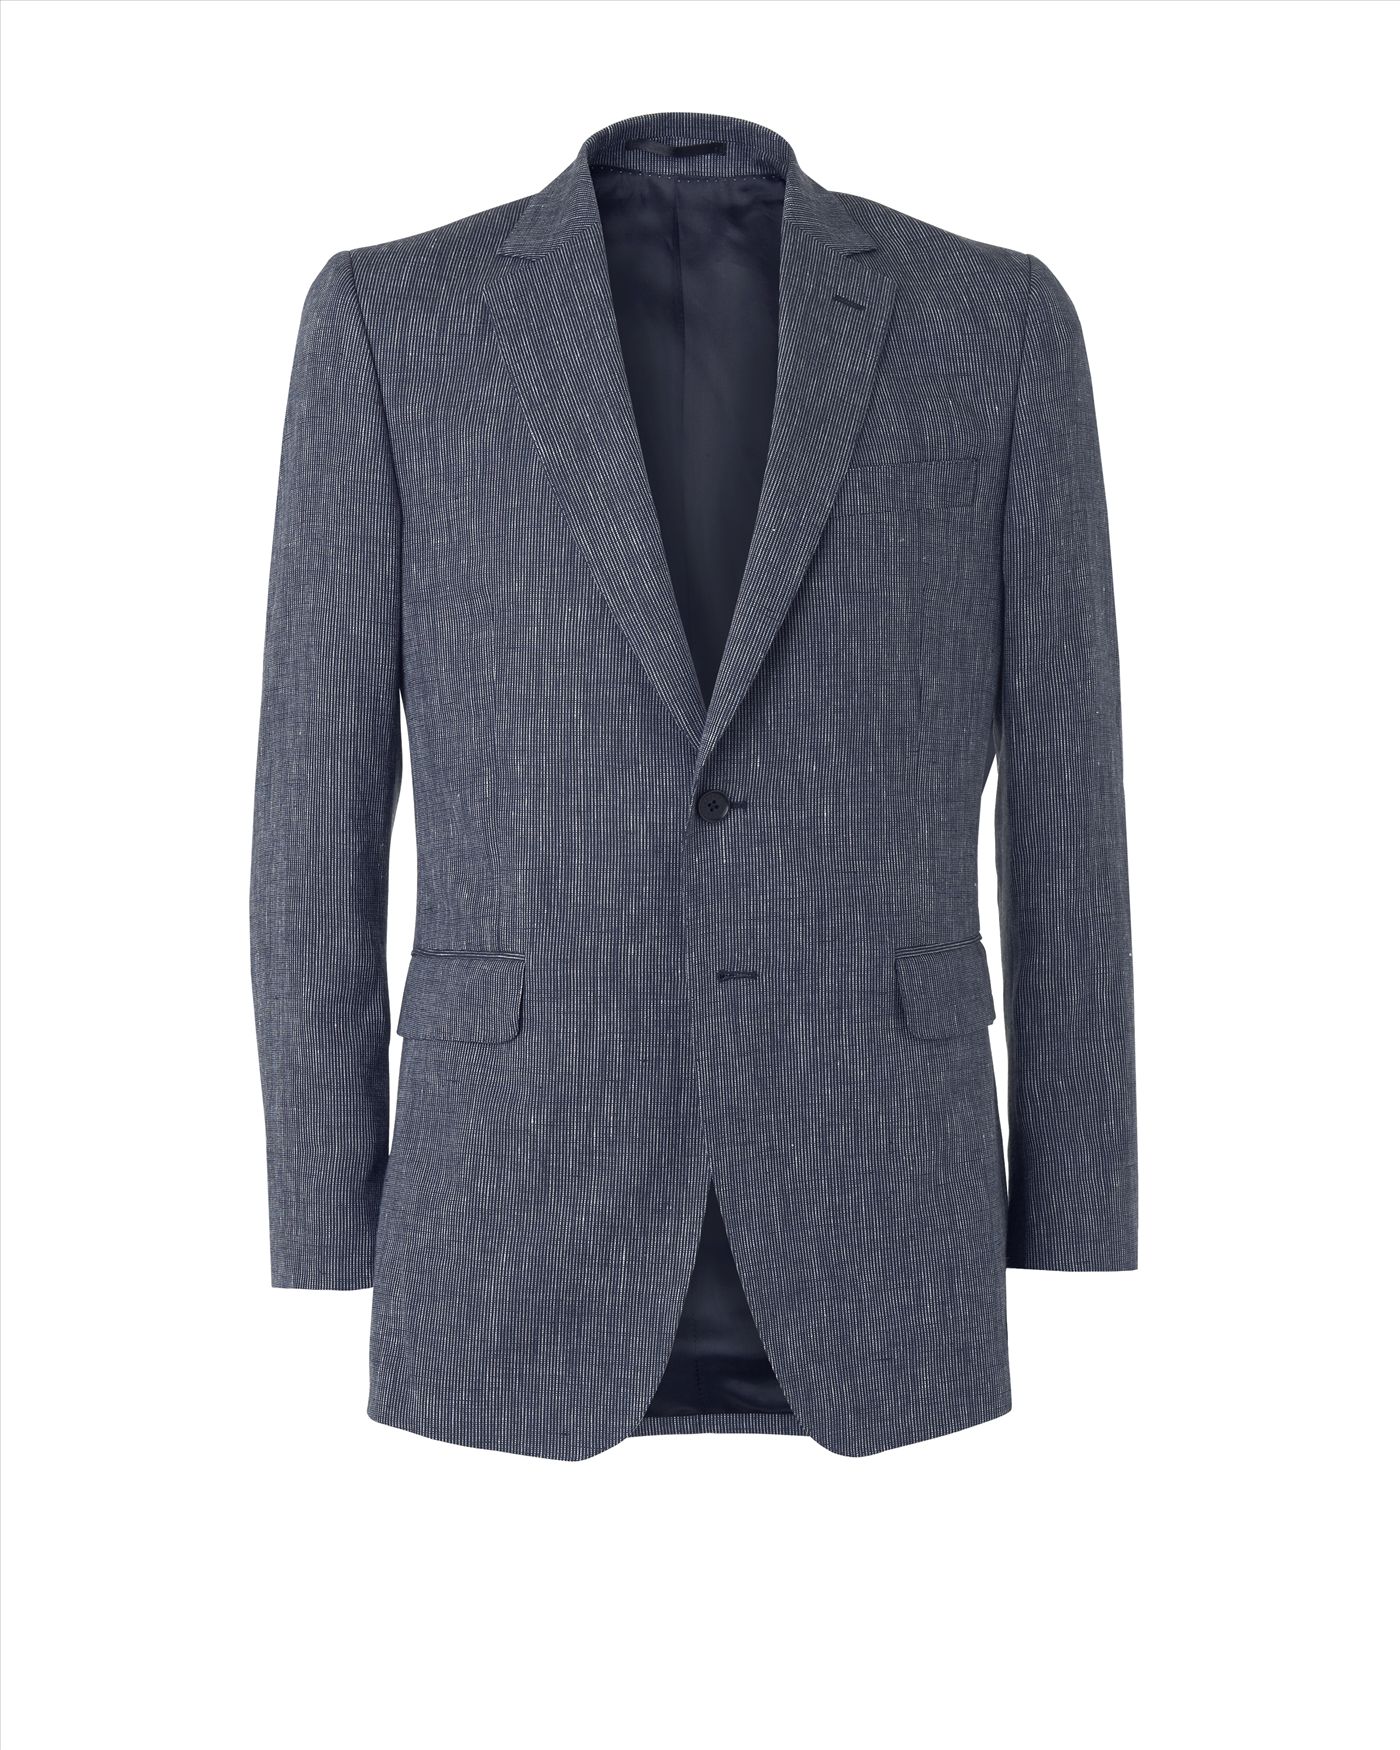 Lyst - Jaeger Irish Linen Jacket in Gray for Men